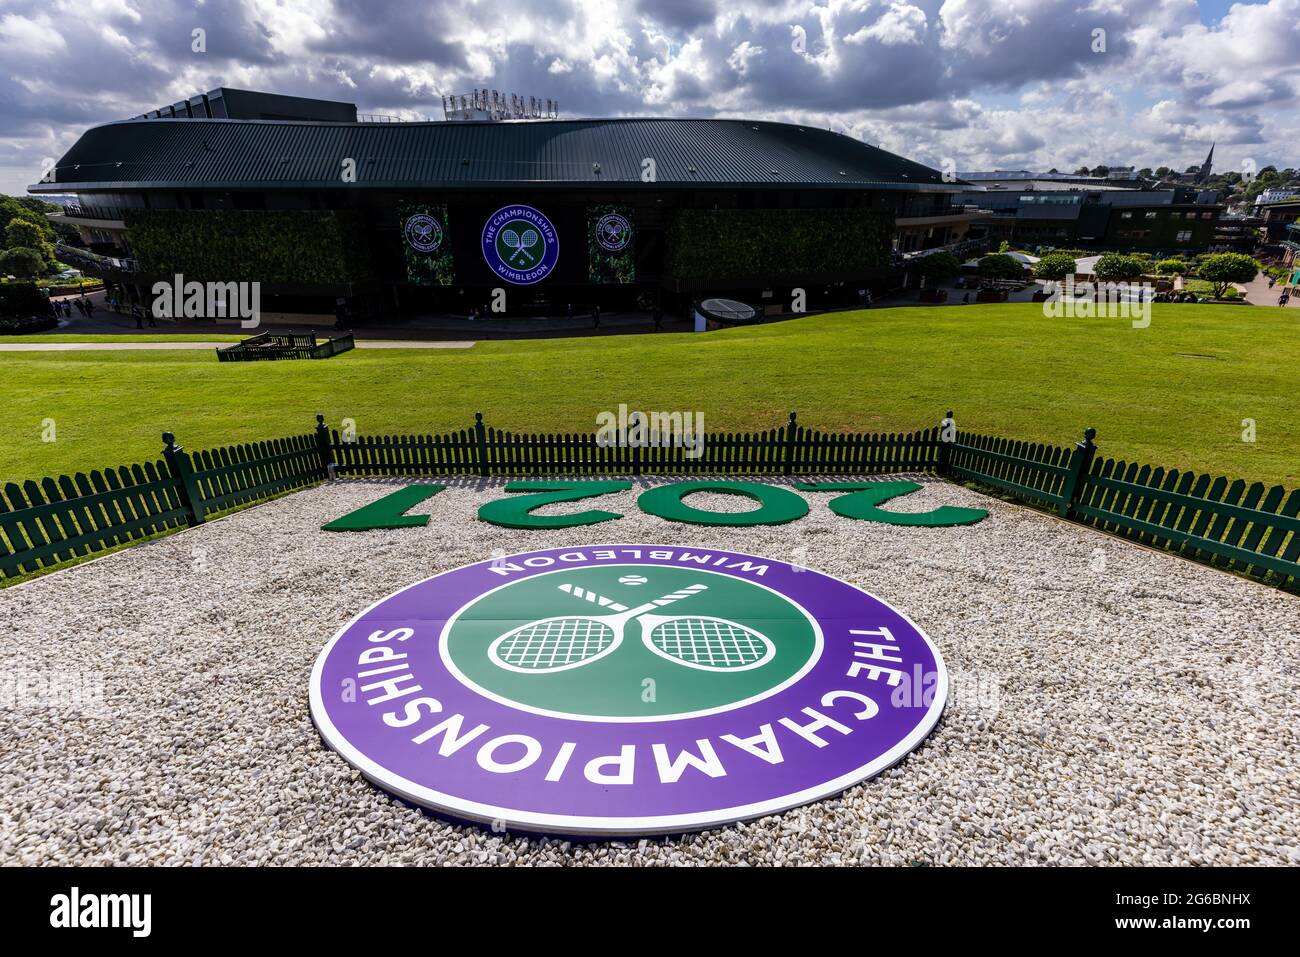 Vista generale davanti al settimo giorno di Wimbledon presso l'All England Lawn Tennis and Croquet Club, Wimbledon. Data immagine: Lunedì 5 luglio 2021. Foto Stock